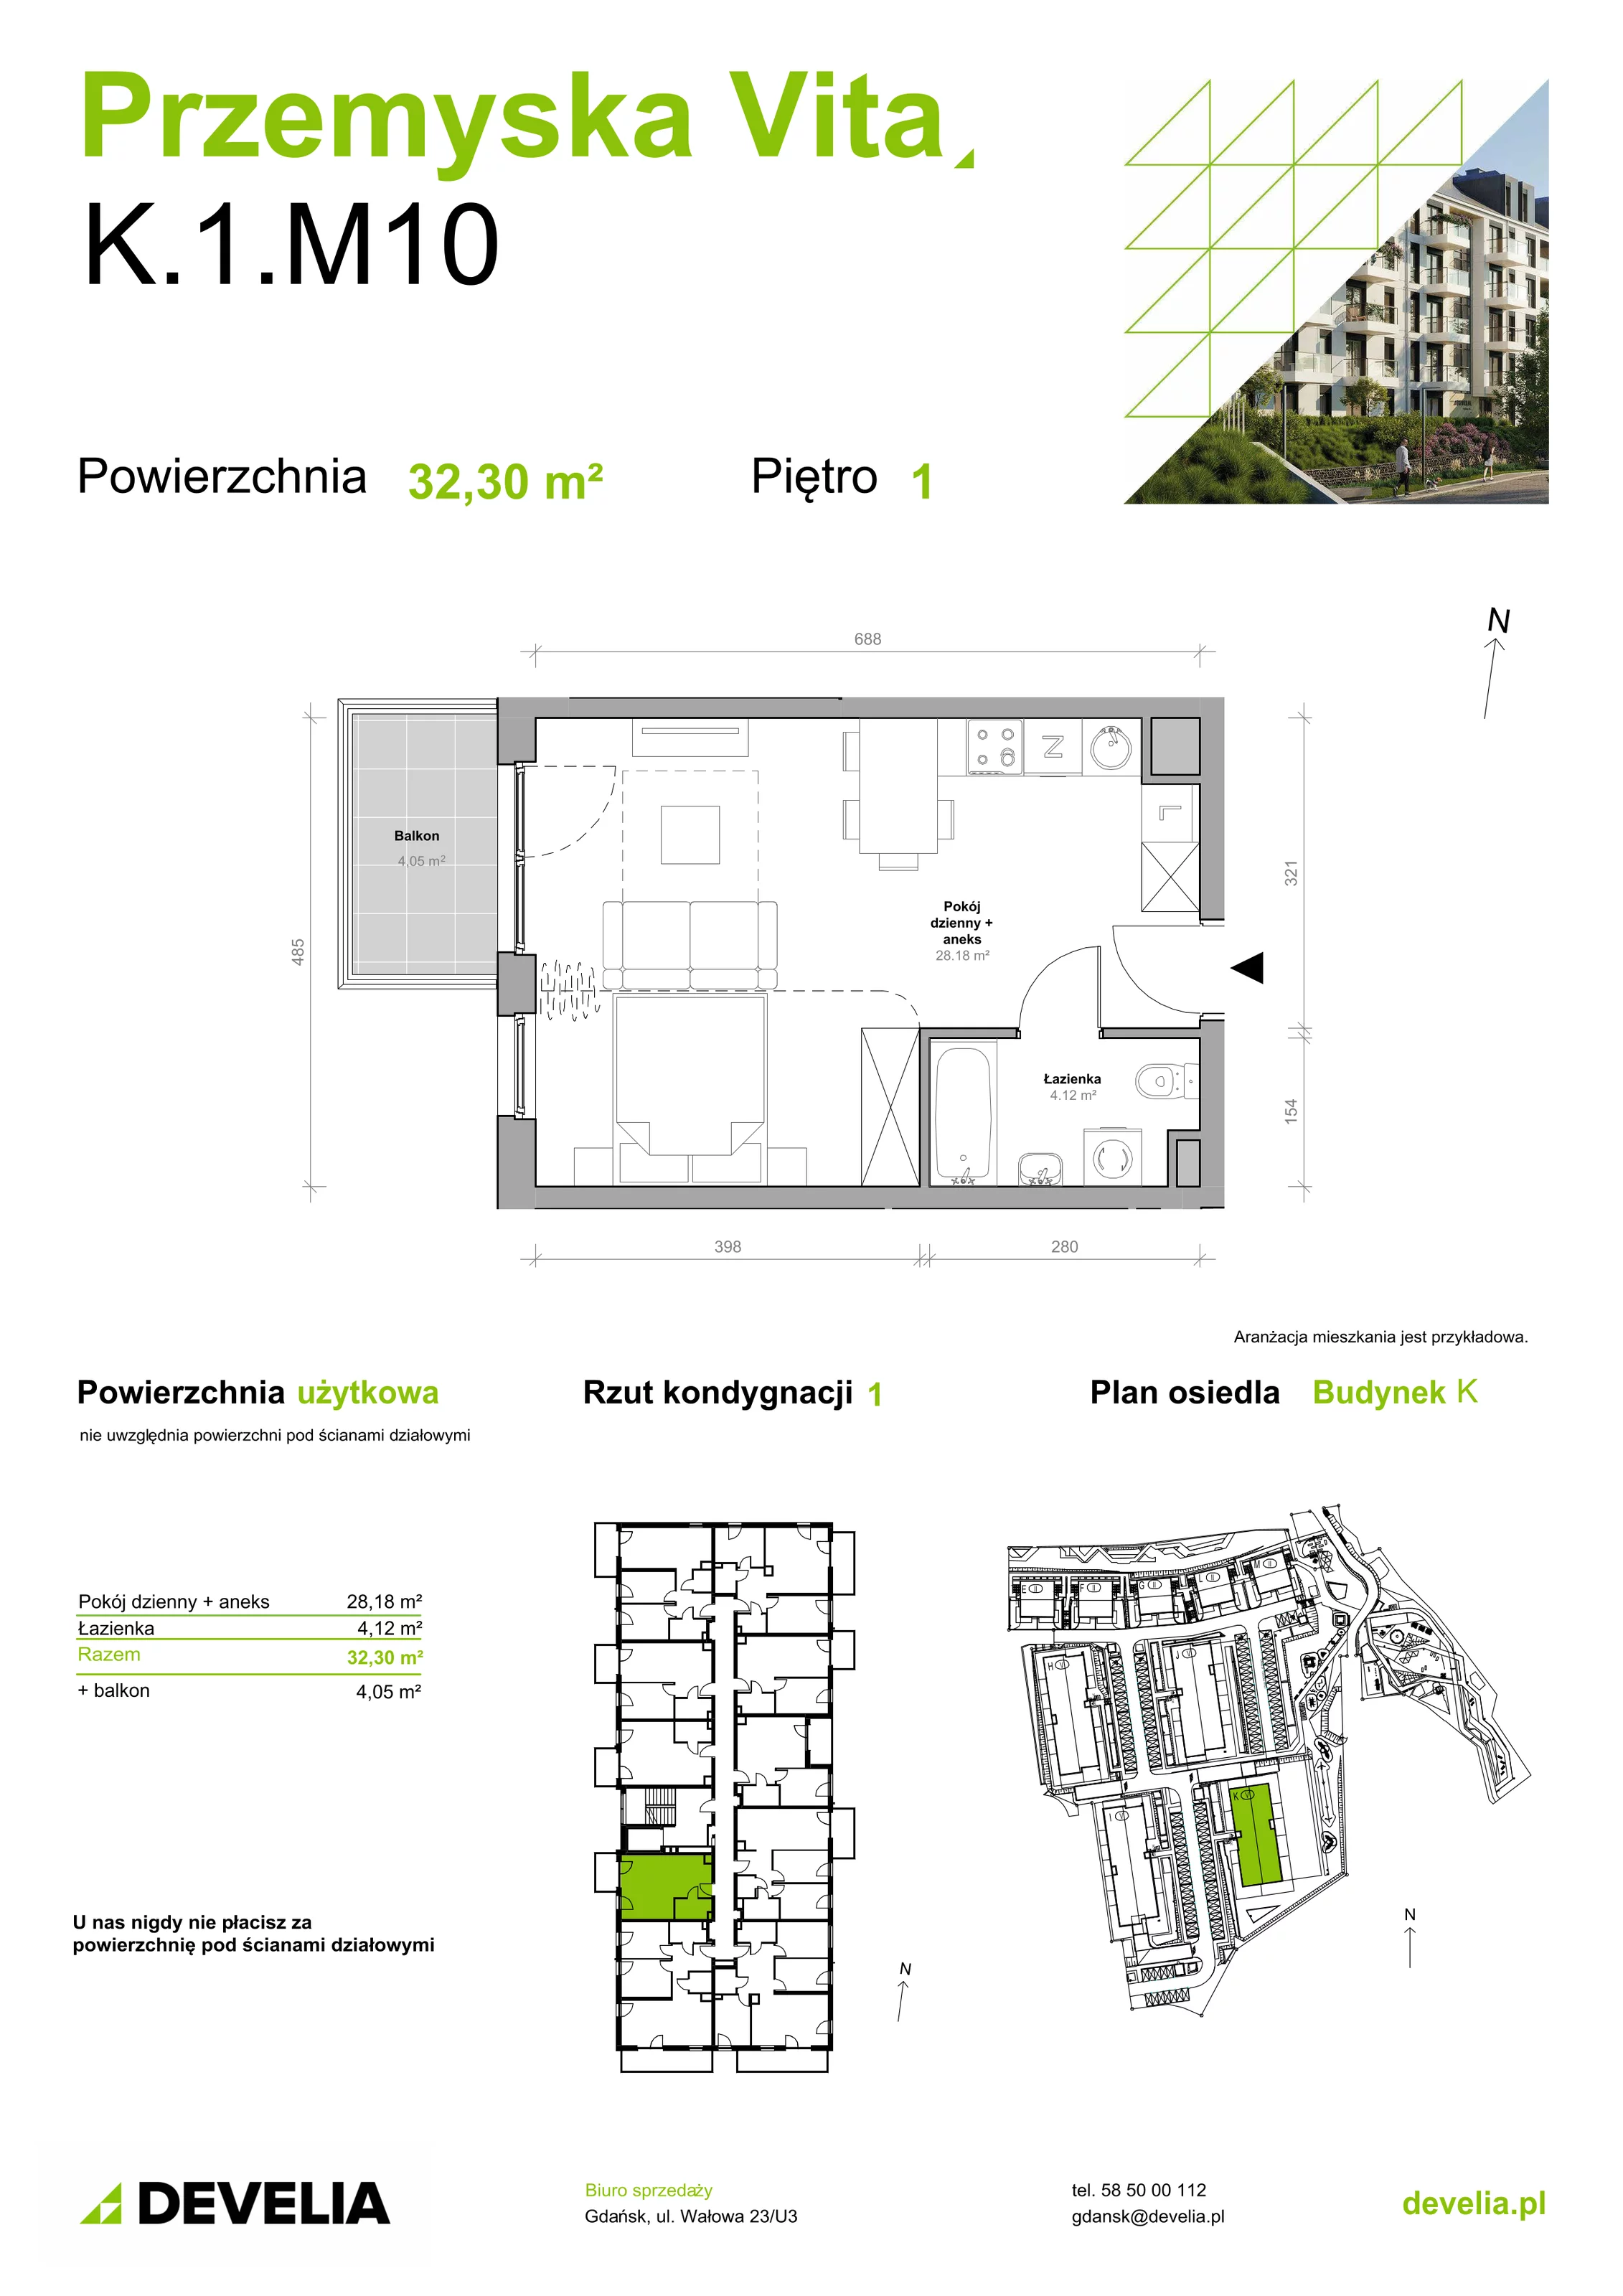 Mieszkanie 32,30 m², piętro 1, oferta nr K.1.M10, Przemyska Vita, Gdańsk, Ujeścisko-Łostowice, Ujeścisko, ul. Przemyska 37